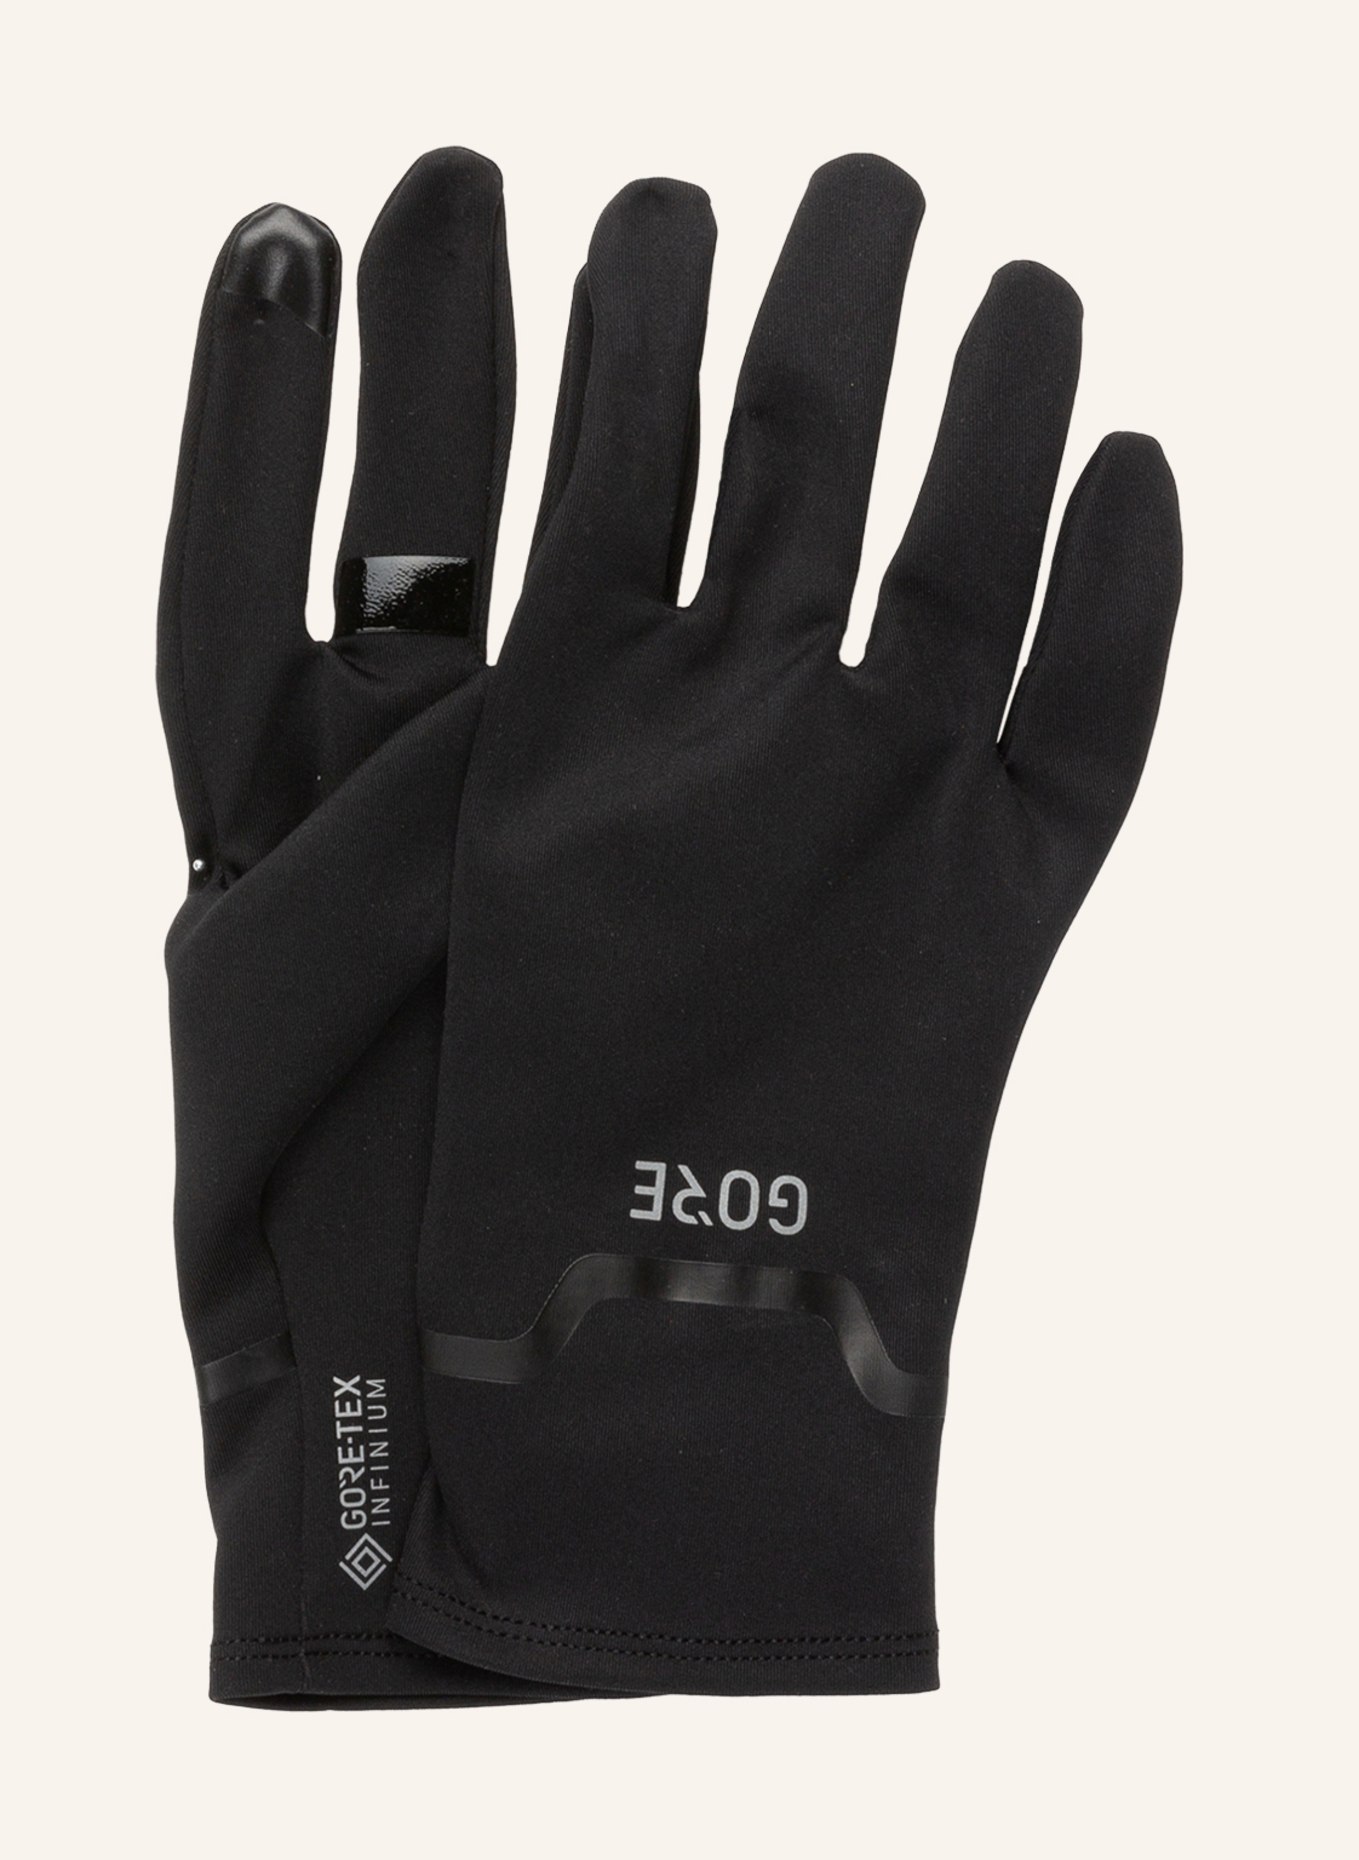 GORE RUNNING WEAR Multisport-Handschuhe GORE-TEX INFINIUM™ in schwarz